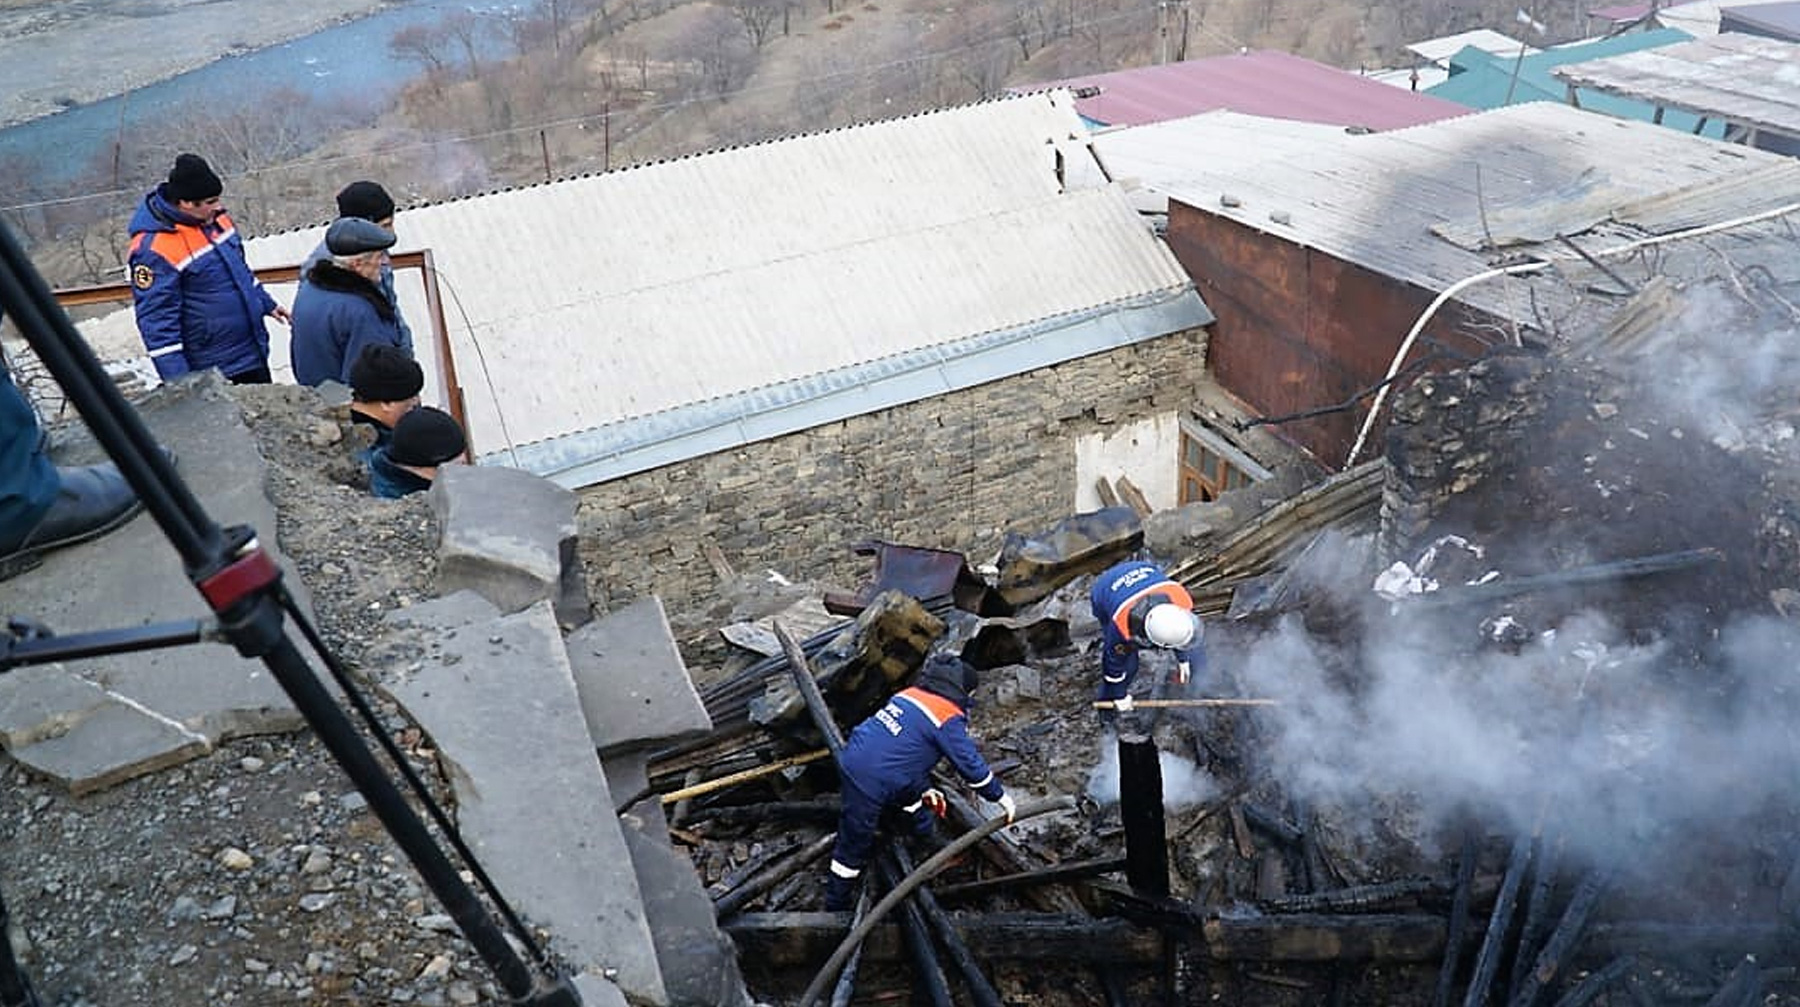 Тушение пожара заняло около четырех часов, пострадавших в ходе инцидента нет Фото: пресс-служба ГУ МЧС по Дагестану